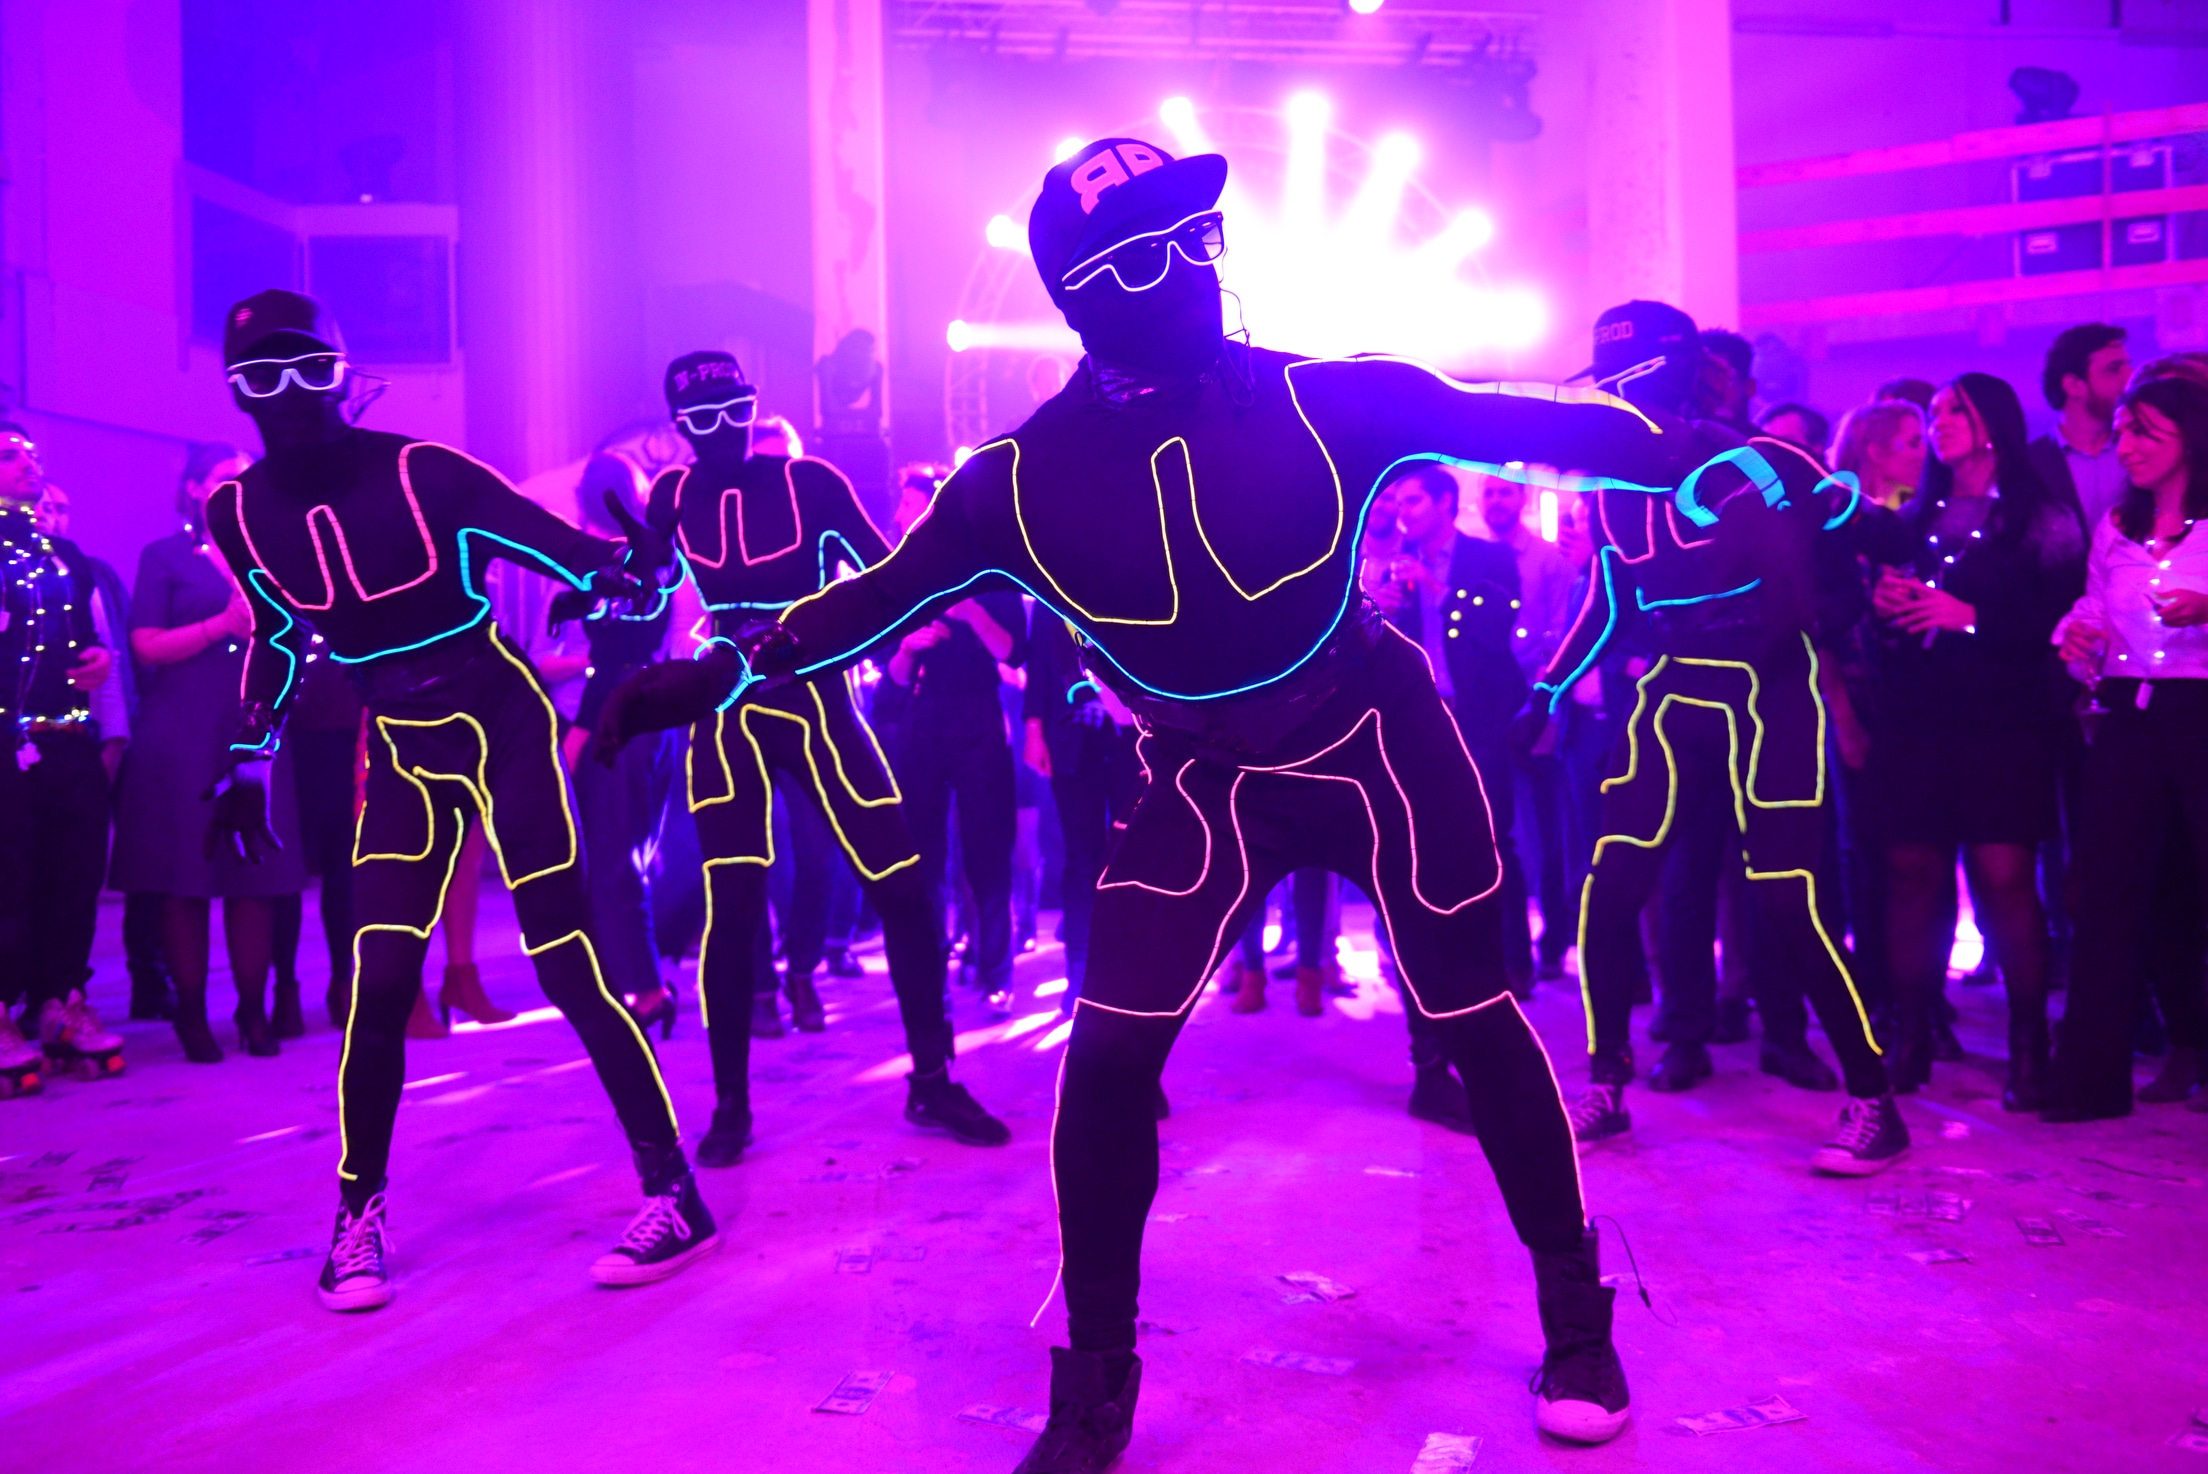 Neuflize-danseurs-hiphop-costume-néon-performance-dancefloor-danse-chorégraphie-robot-casquette-lunette-soirée-event-bal-lumineux-agence-wato-banque-lieu-insolite-brut-urbain-paris